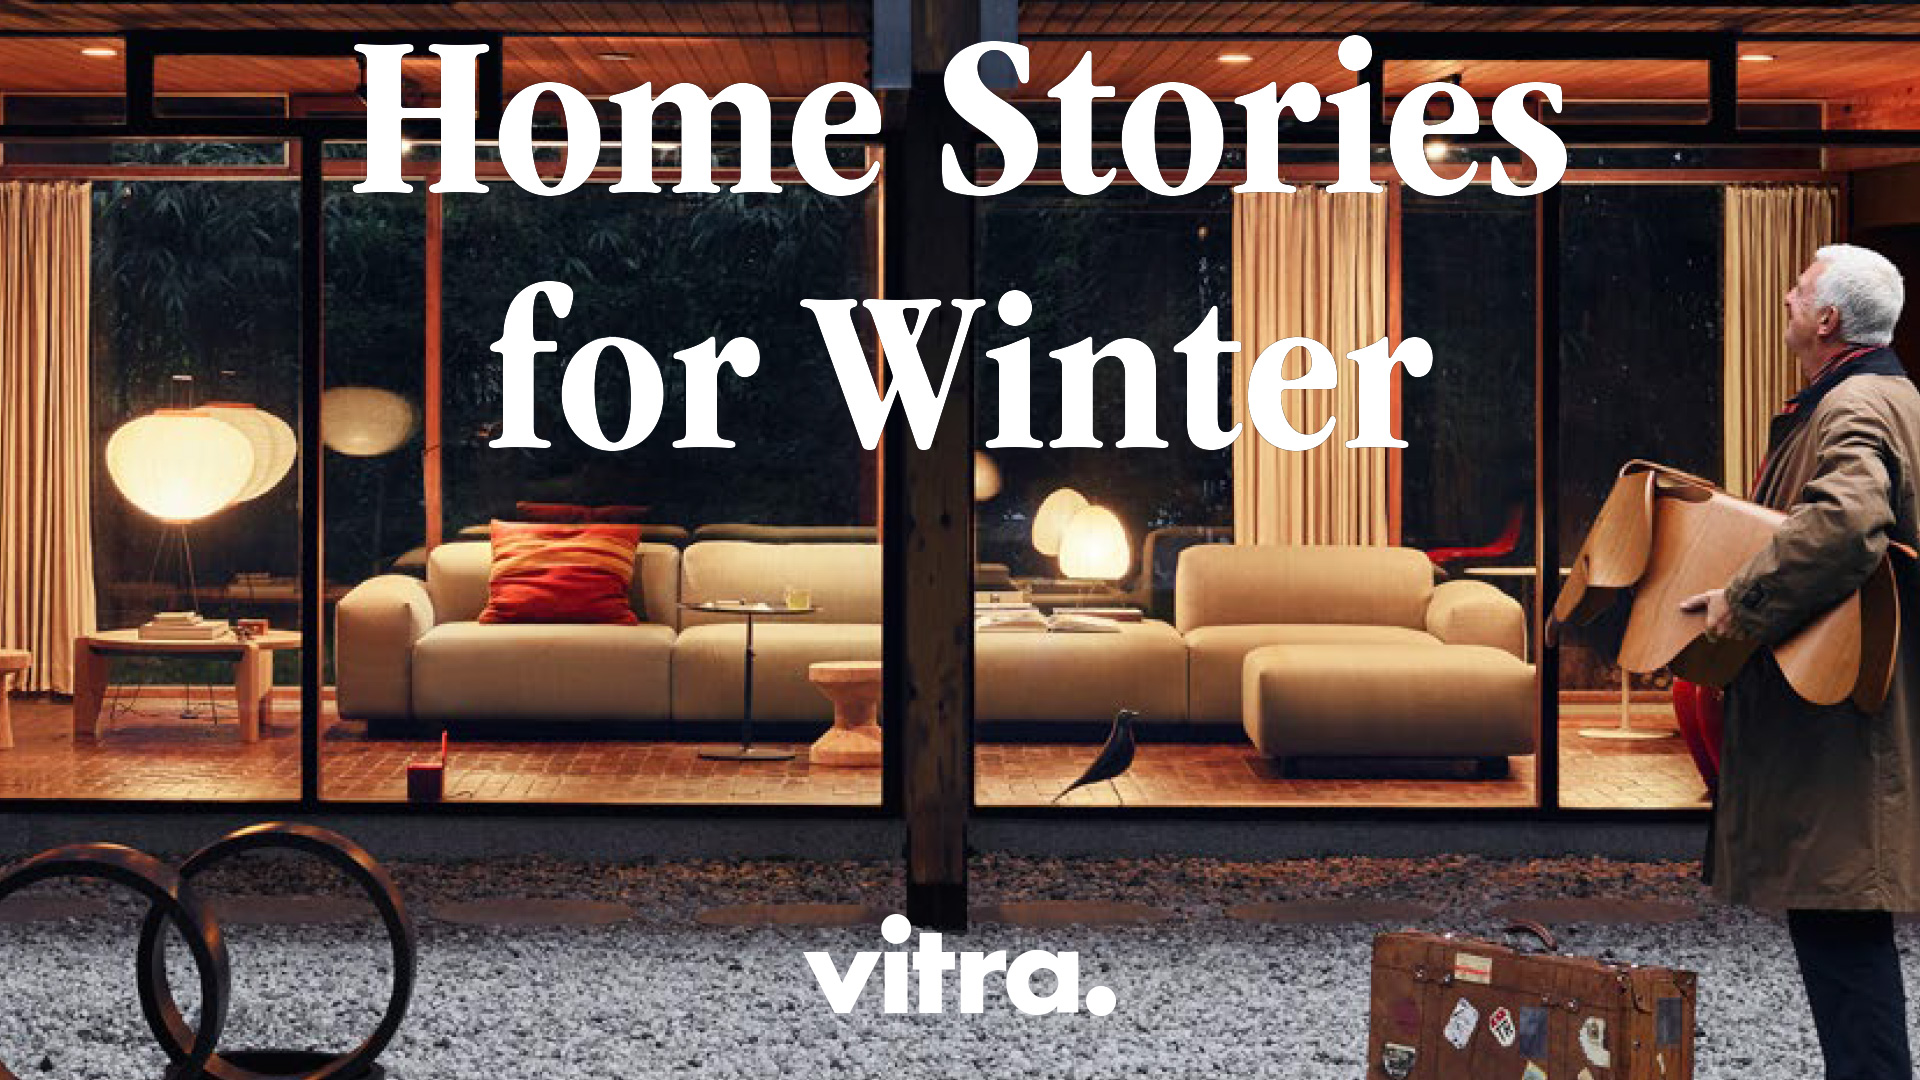 Vitra Home Stories for Winter im MAK und im Vitra Home Store 1050 Wien bei Grünbeck